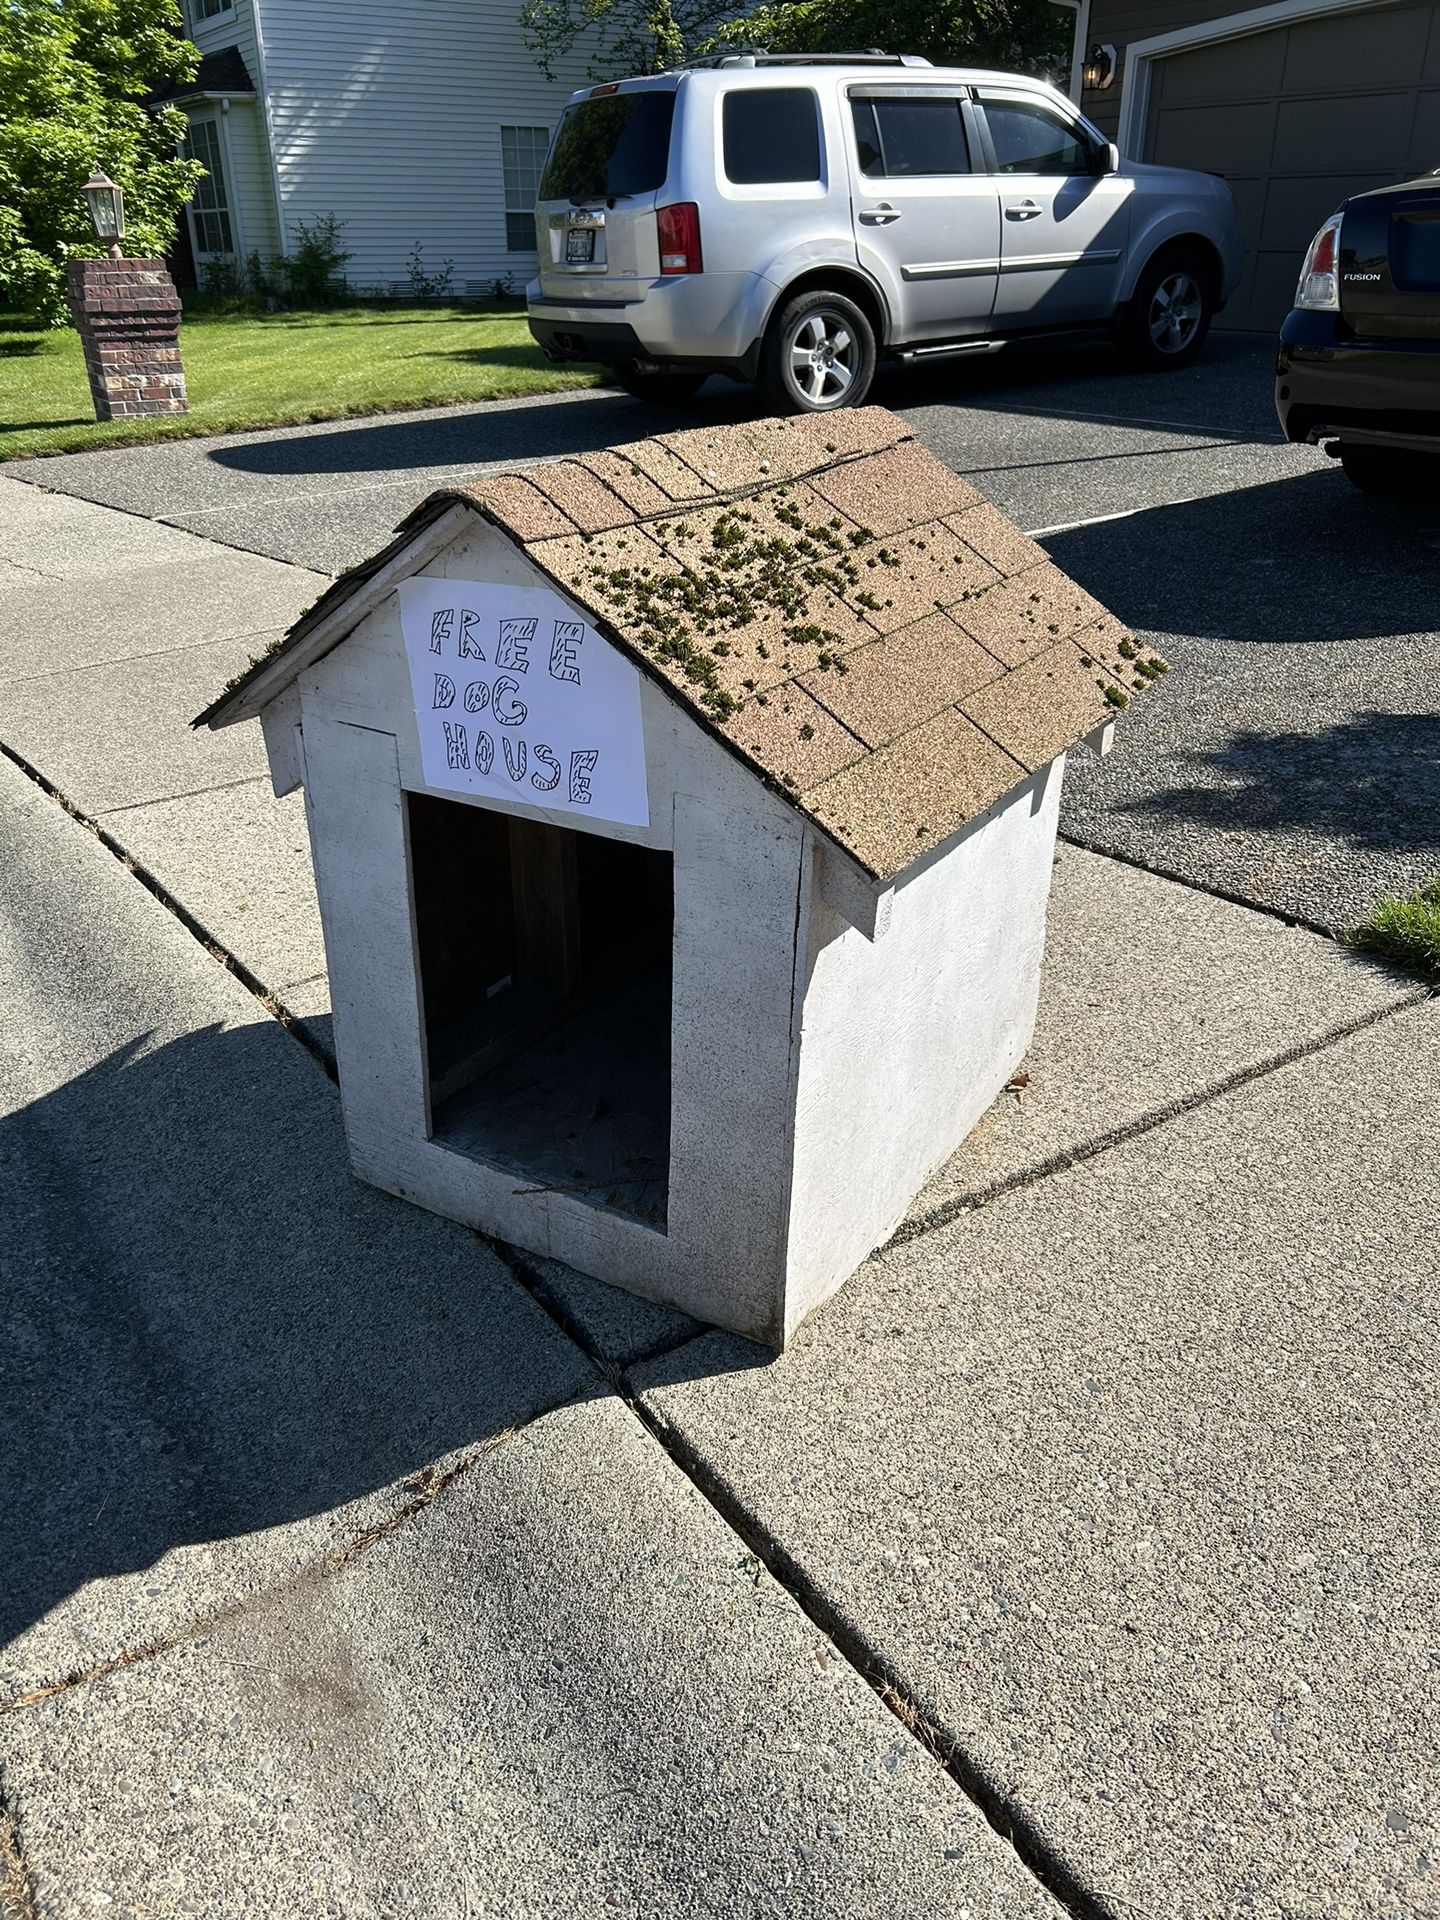 Free Dog House